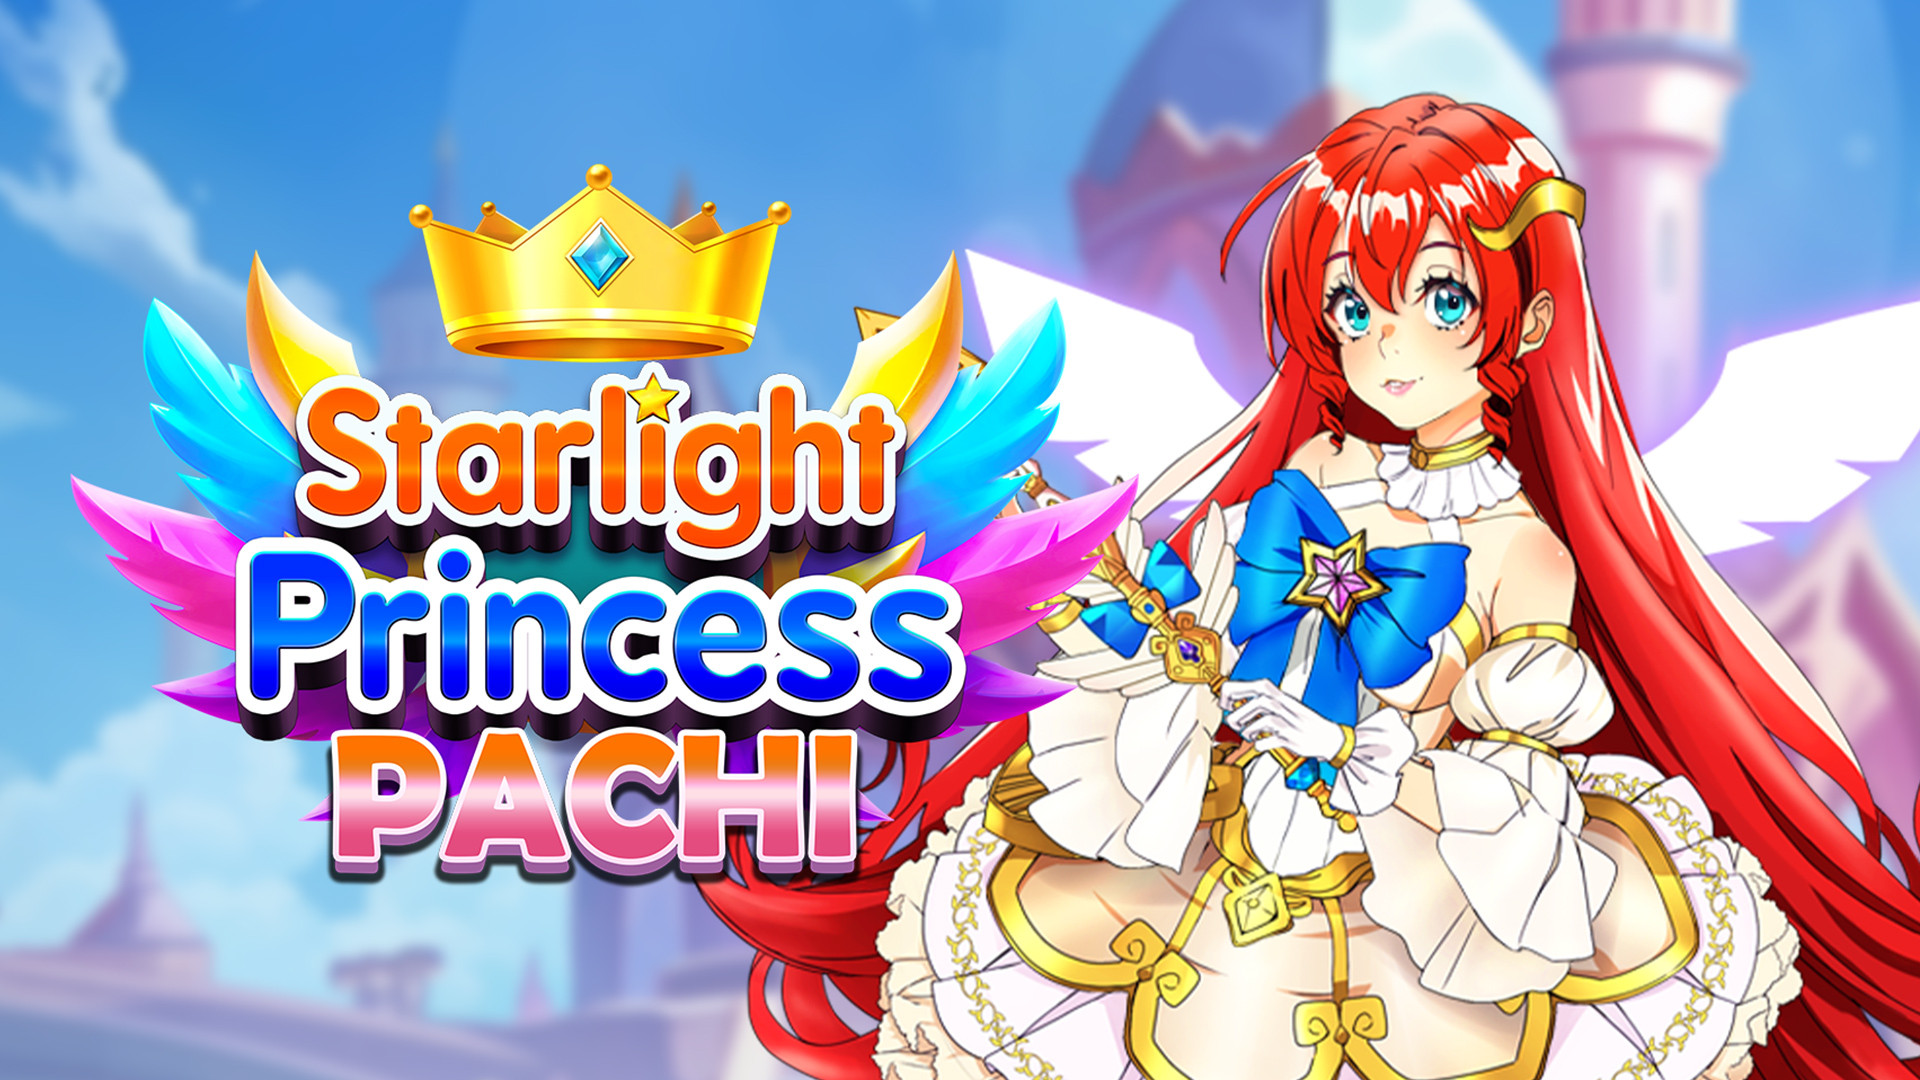 Starlight Princess Pachi